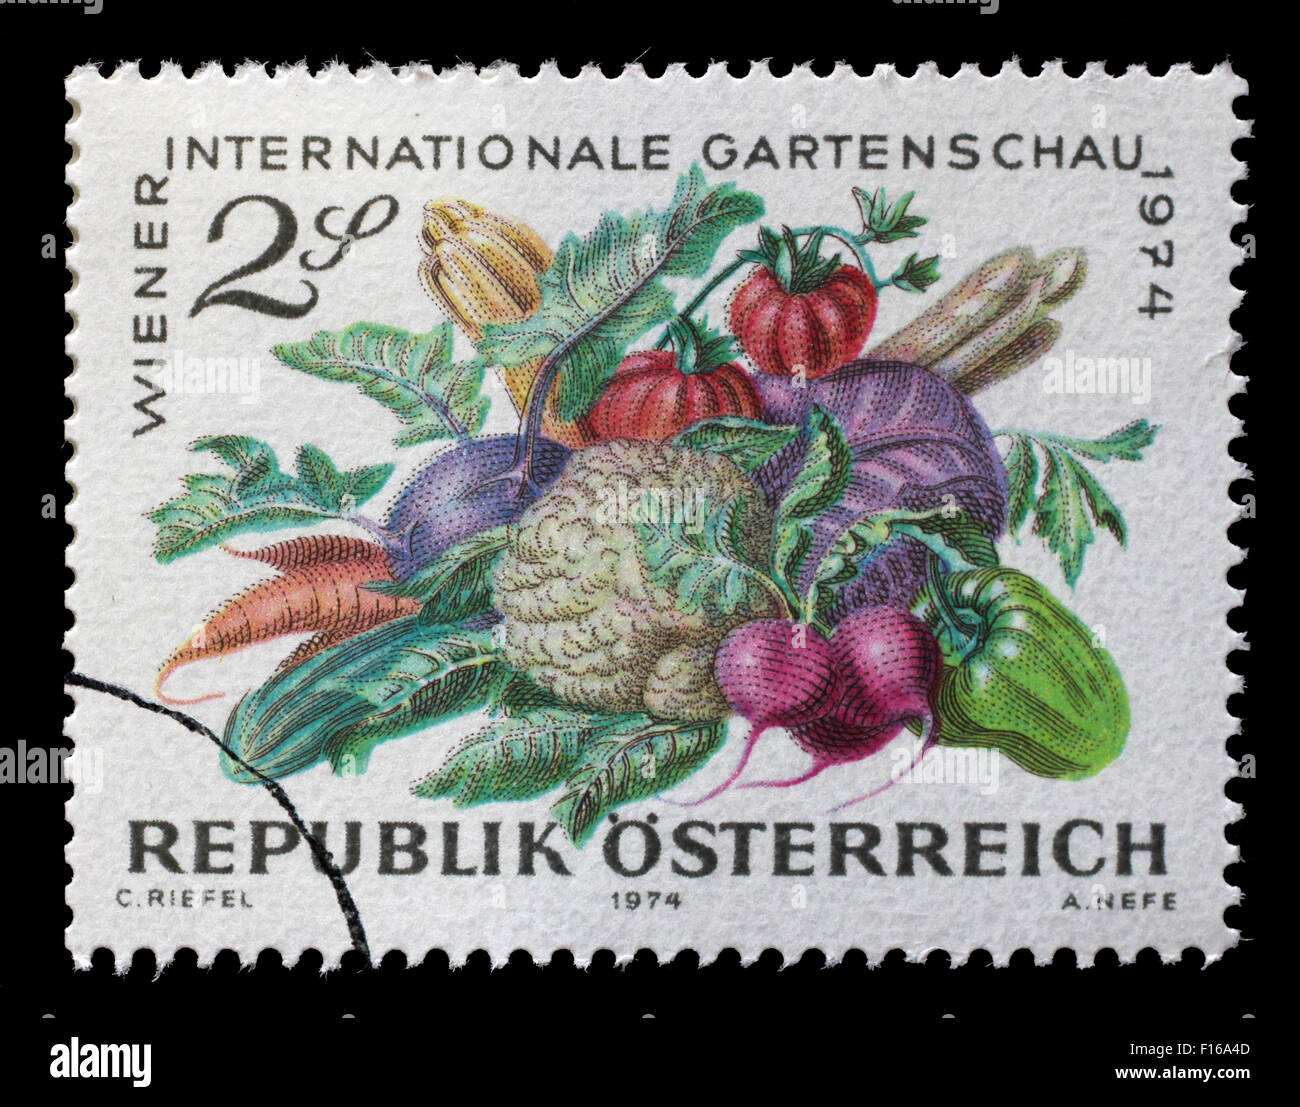 Timbres en Autriche, consacrée à l'International Garden Show, Vienne, montré les légumes, vers 1974 Banque D'Images